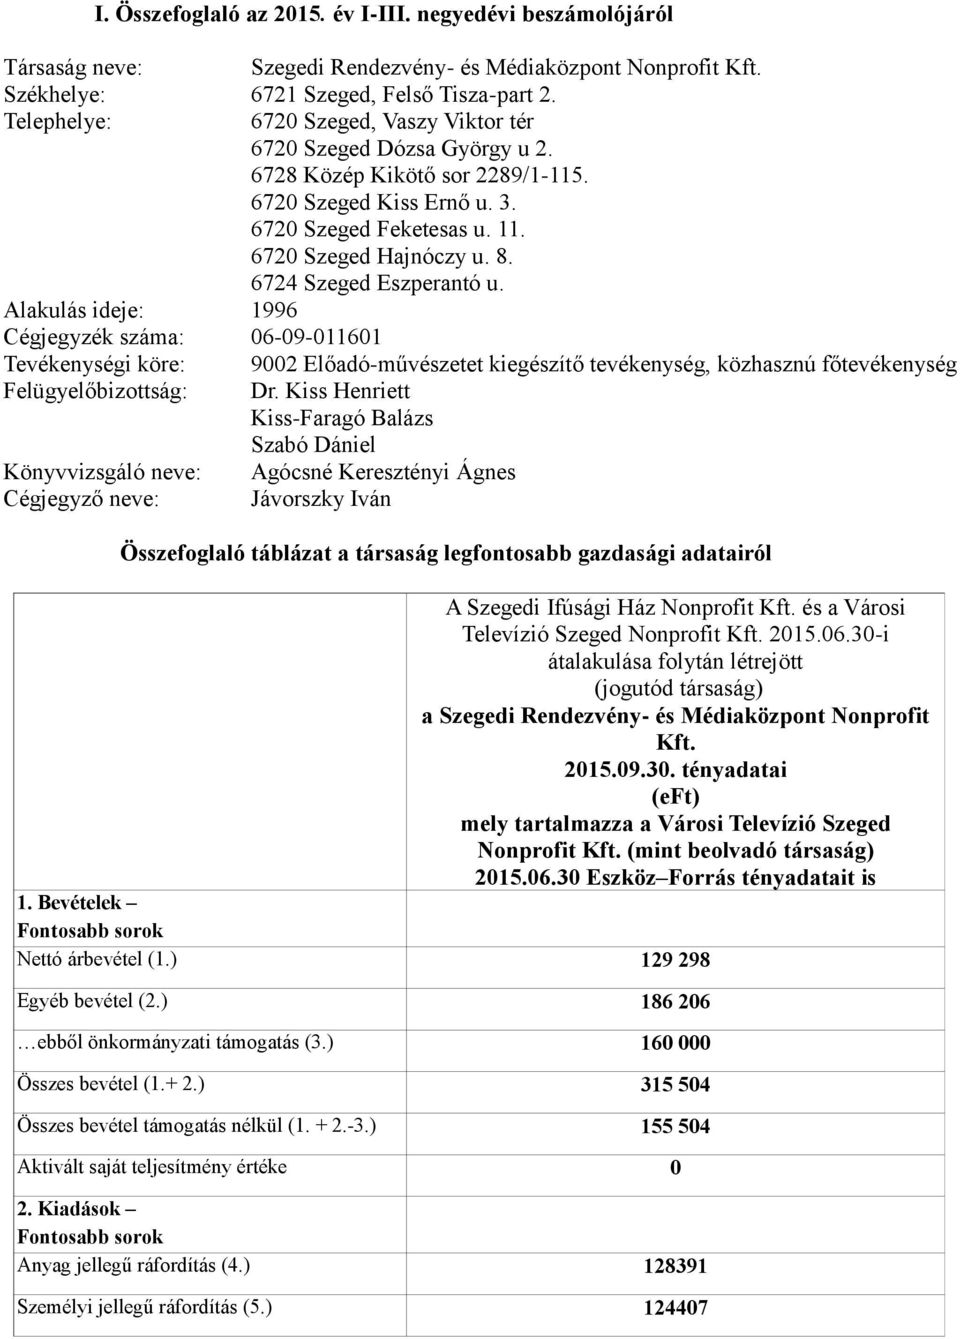 6724 Szeged Eszperantó u. Alakulás ideje: 1996 Cégjegyzék száma: 06-09-011601 Tevékenységi köre: 9002 Előadó-művészetet kiegészítő tevékenység, közhasznú főtevékenység Felügyelőbizottság: Dr.